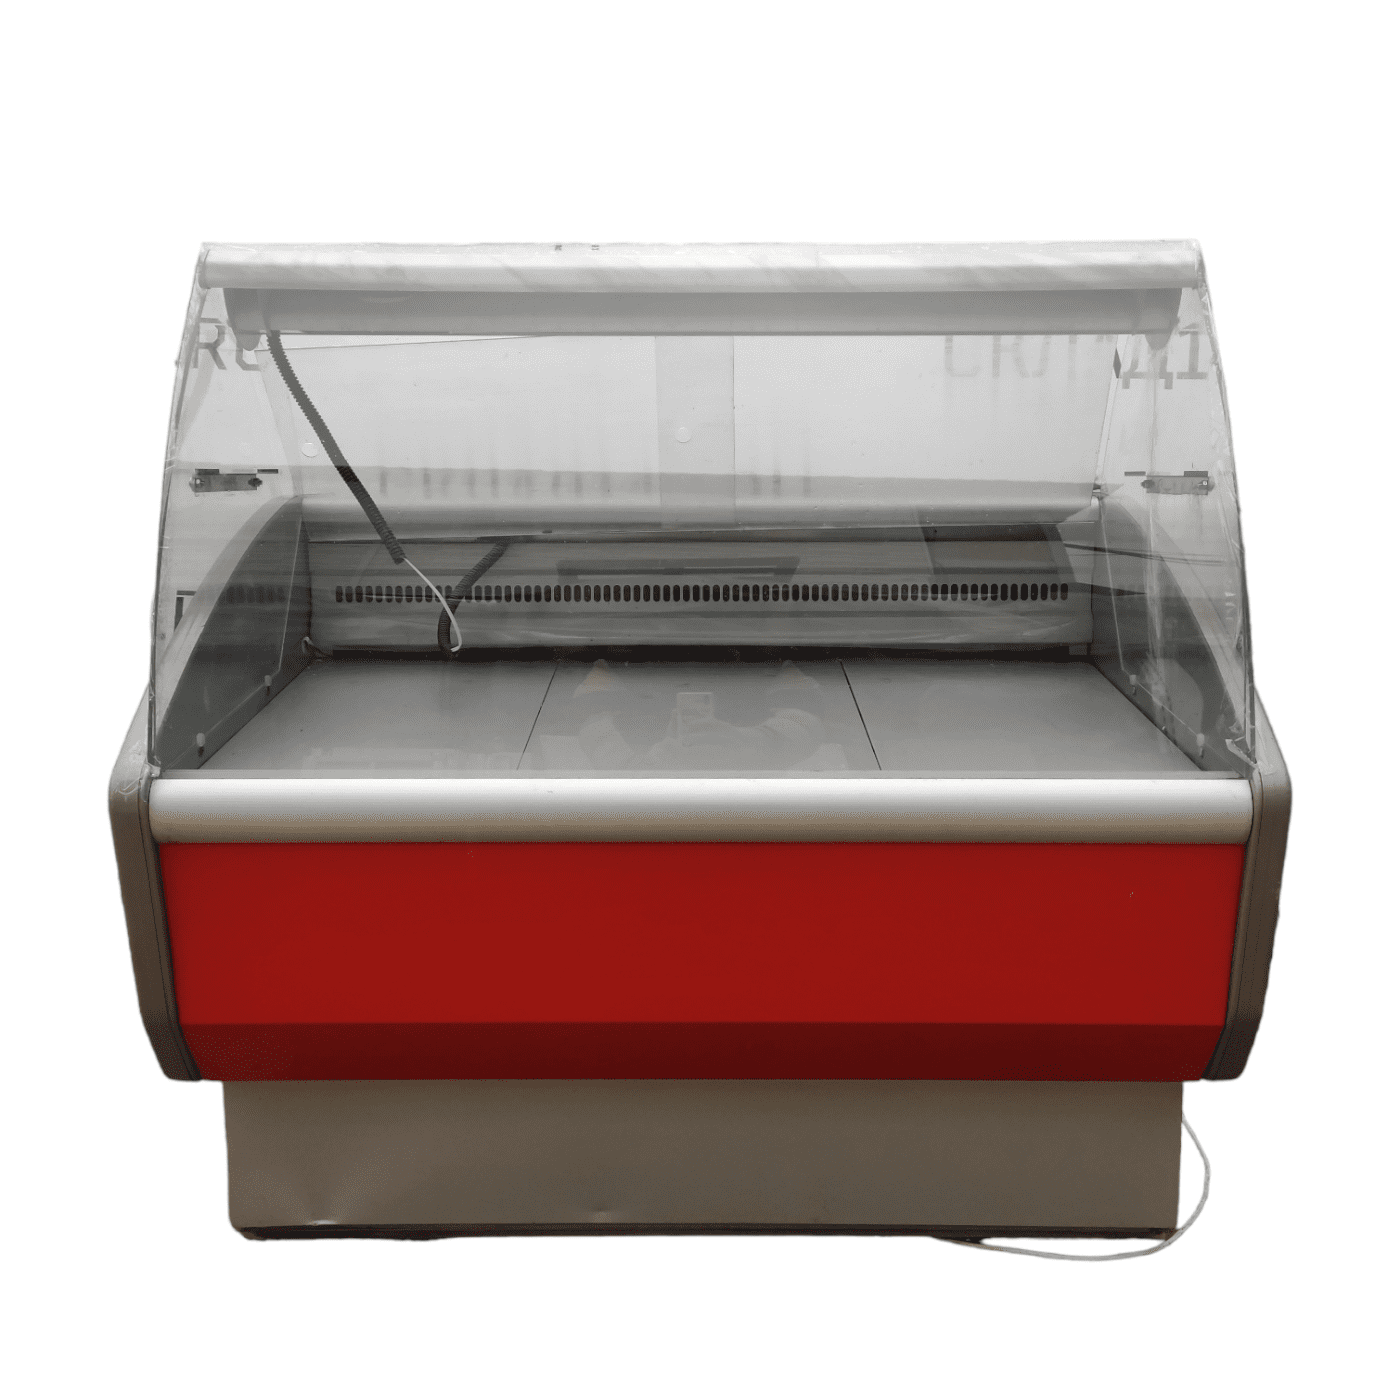 ВХС 1.3 полюс витрина кнопки. Холодильная витрина полюс ВХС-1,8 Carboma gc95 (gc95 SM 1,8-1). Сат 15 ВХС вид спереди. Купить холодильную витрину полюс.